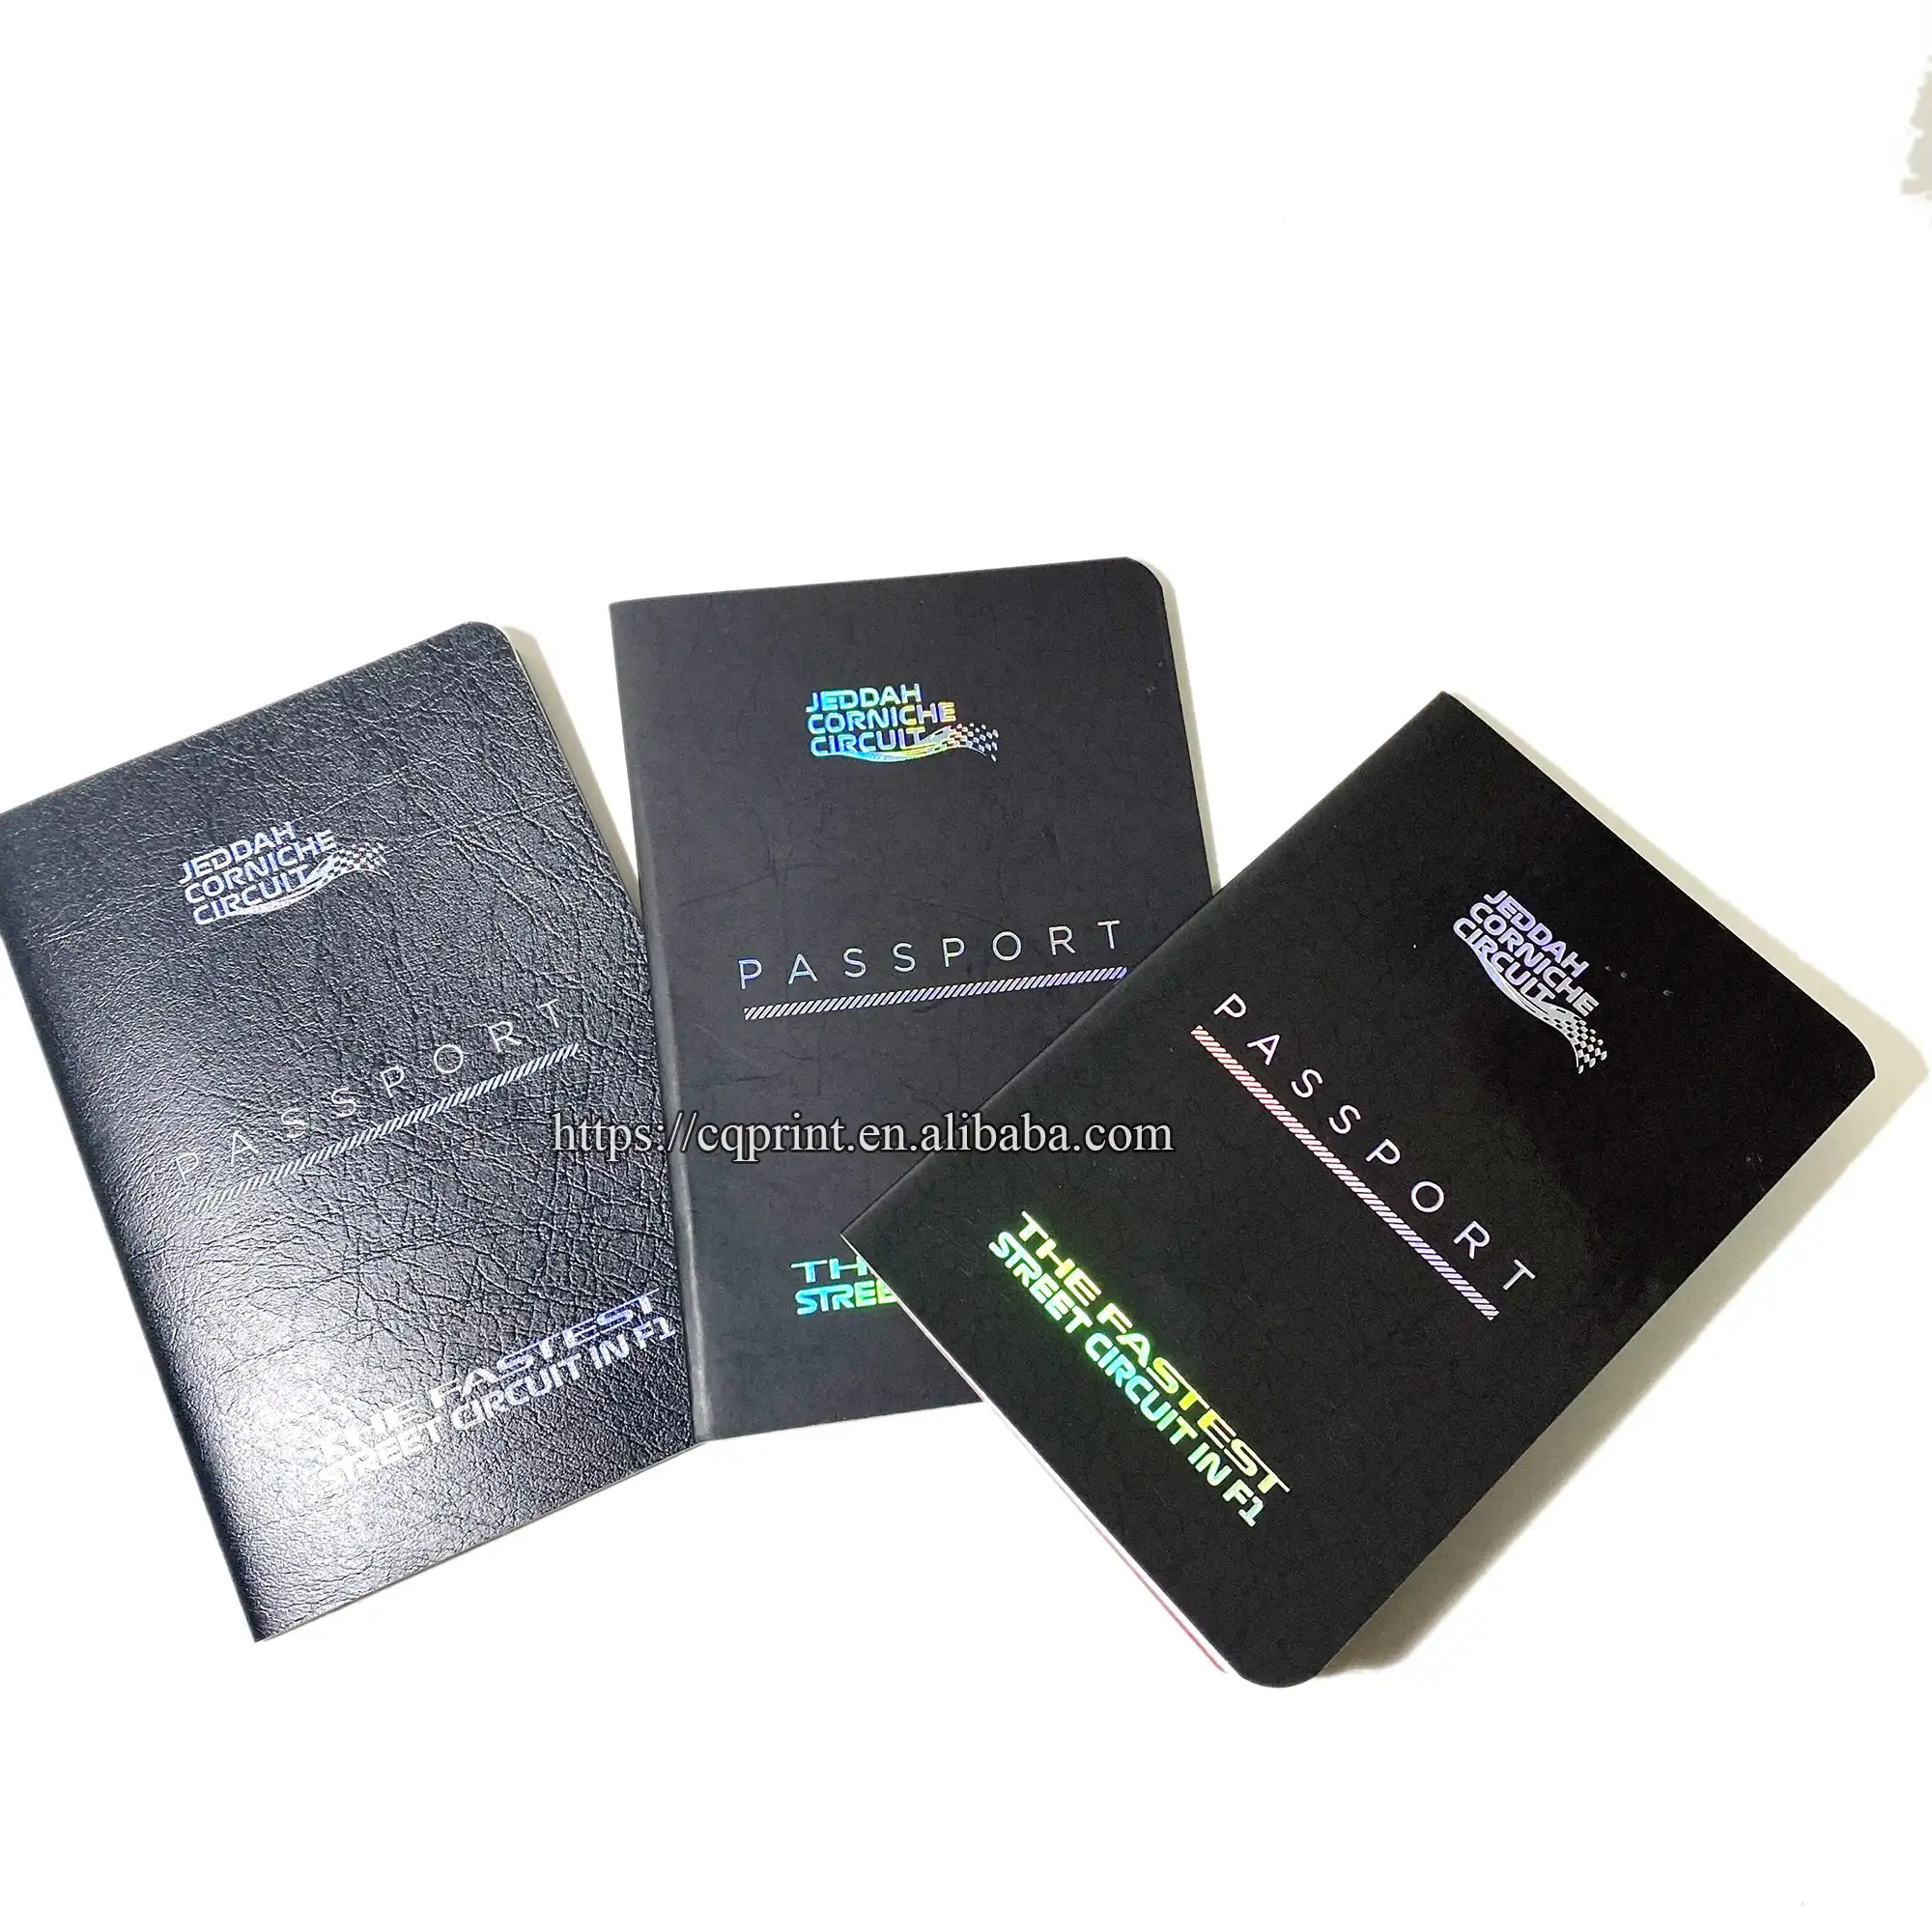 맞춤형 기업 회원 핫 세일 브로셔 핫 스탬핑 여권 인쇄 커버 소재 옵션 다양한 스타일